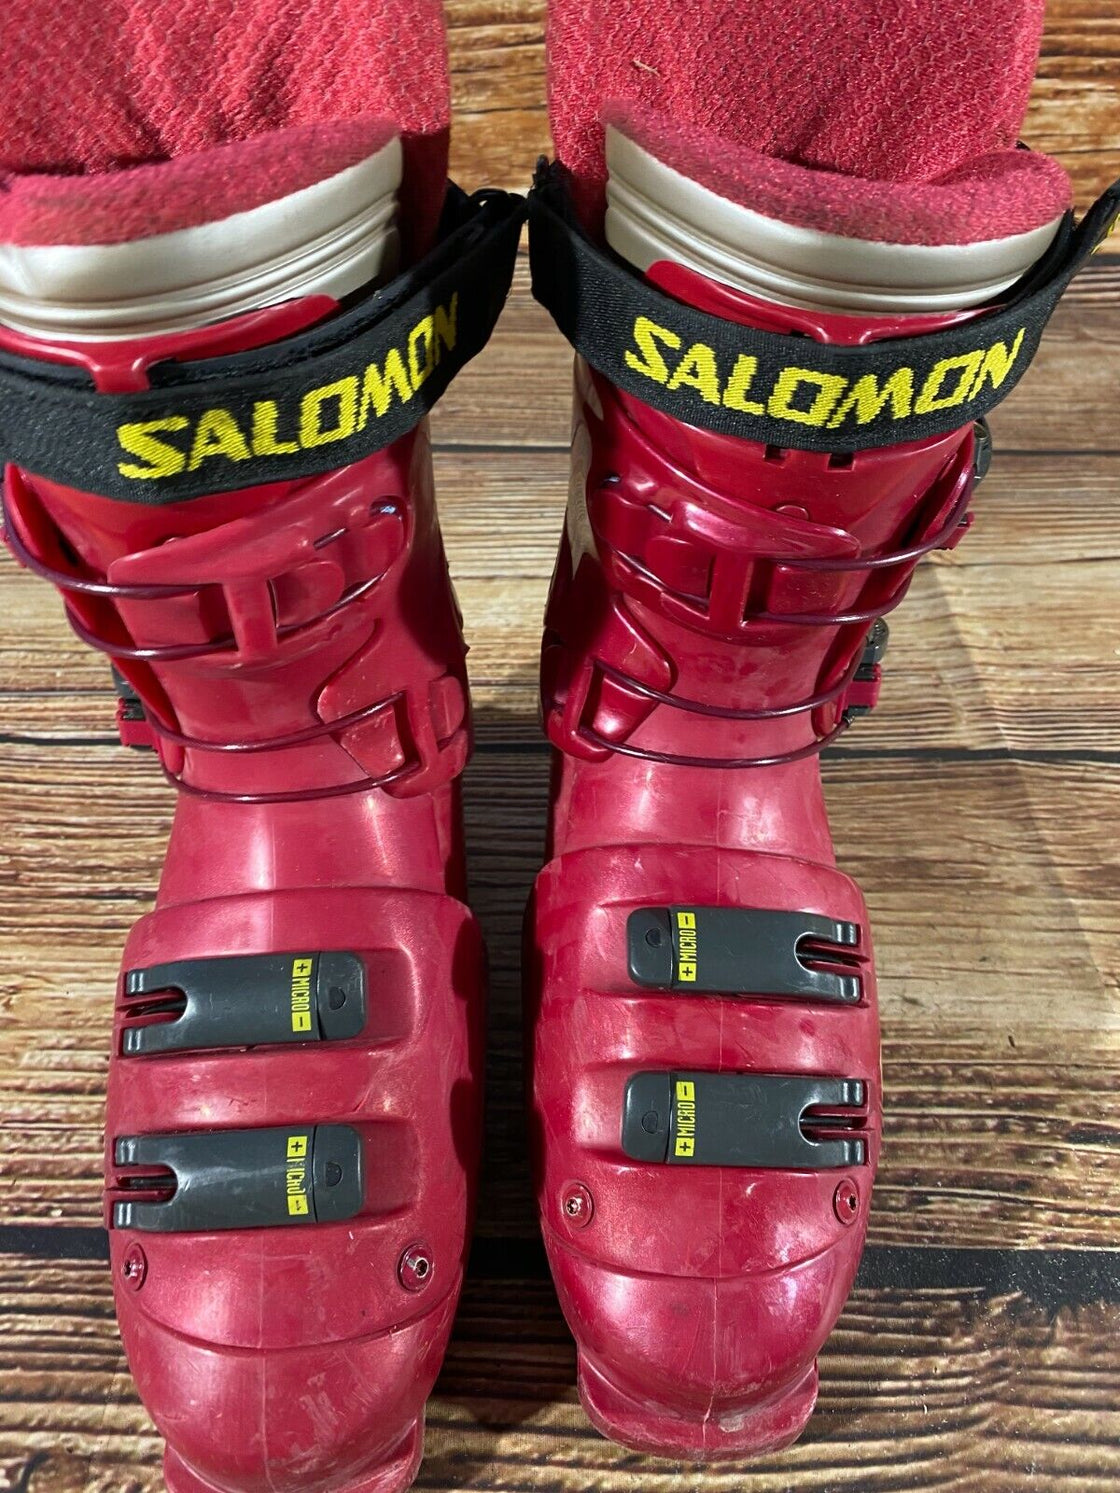 SALOMON Vintage Alpine Ski Boots Size Mondo 265 mm, Outer Sole 311 mm